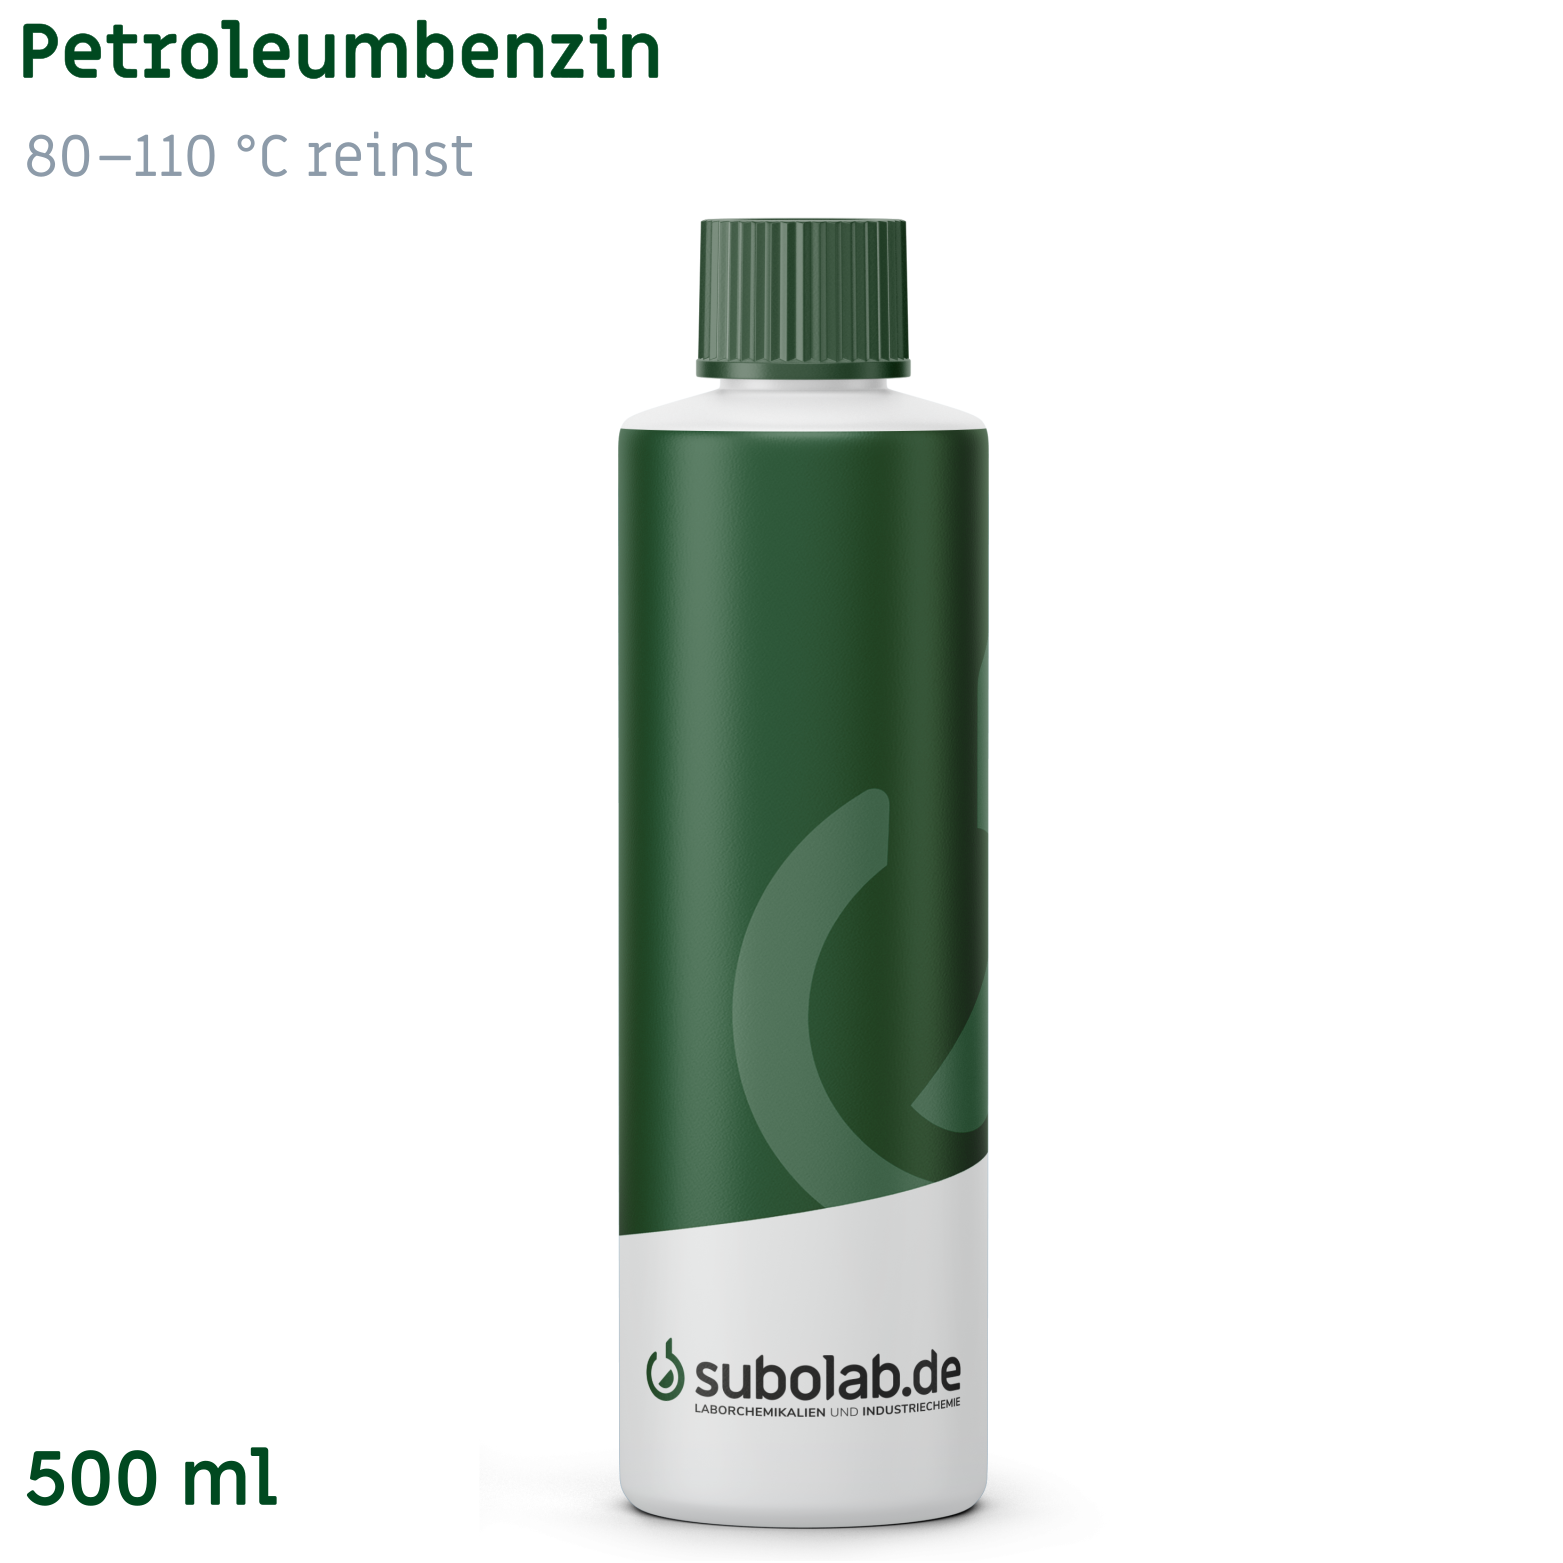 Bild von Petroleumbenzin 80 - 110 °C reinst (500 ml)